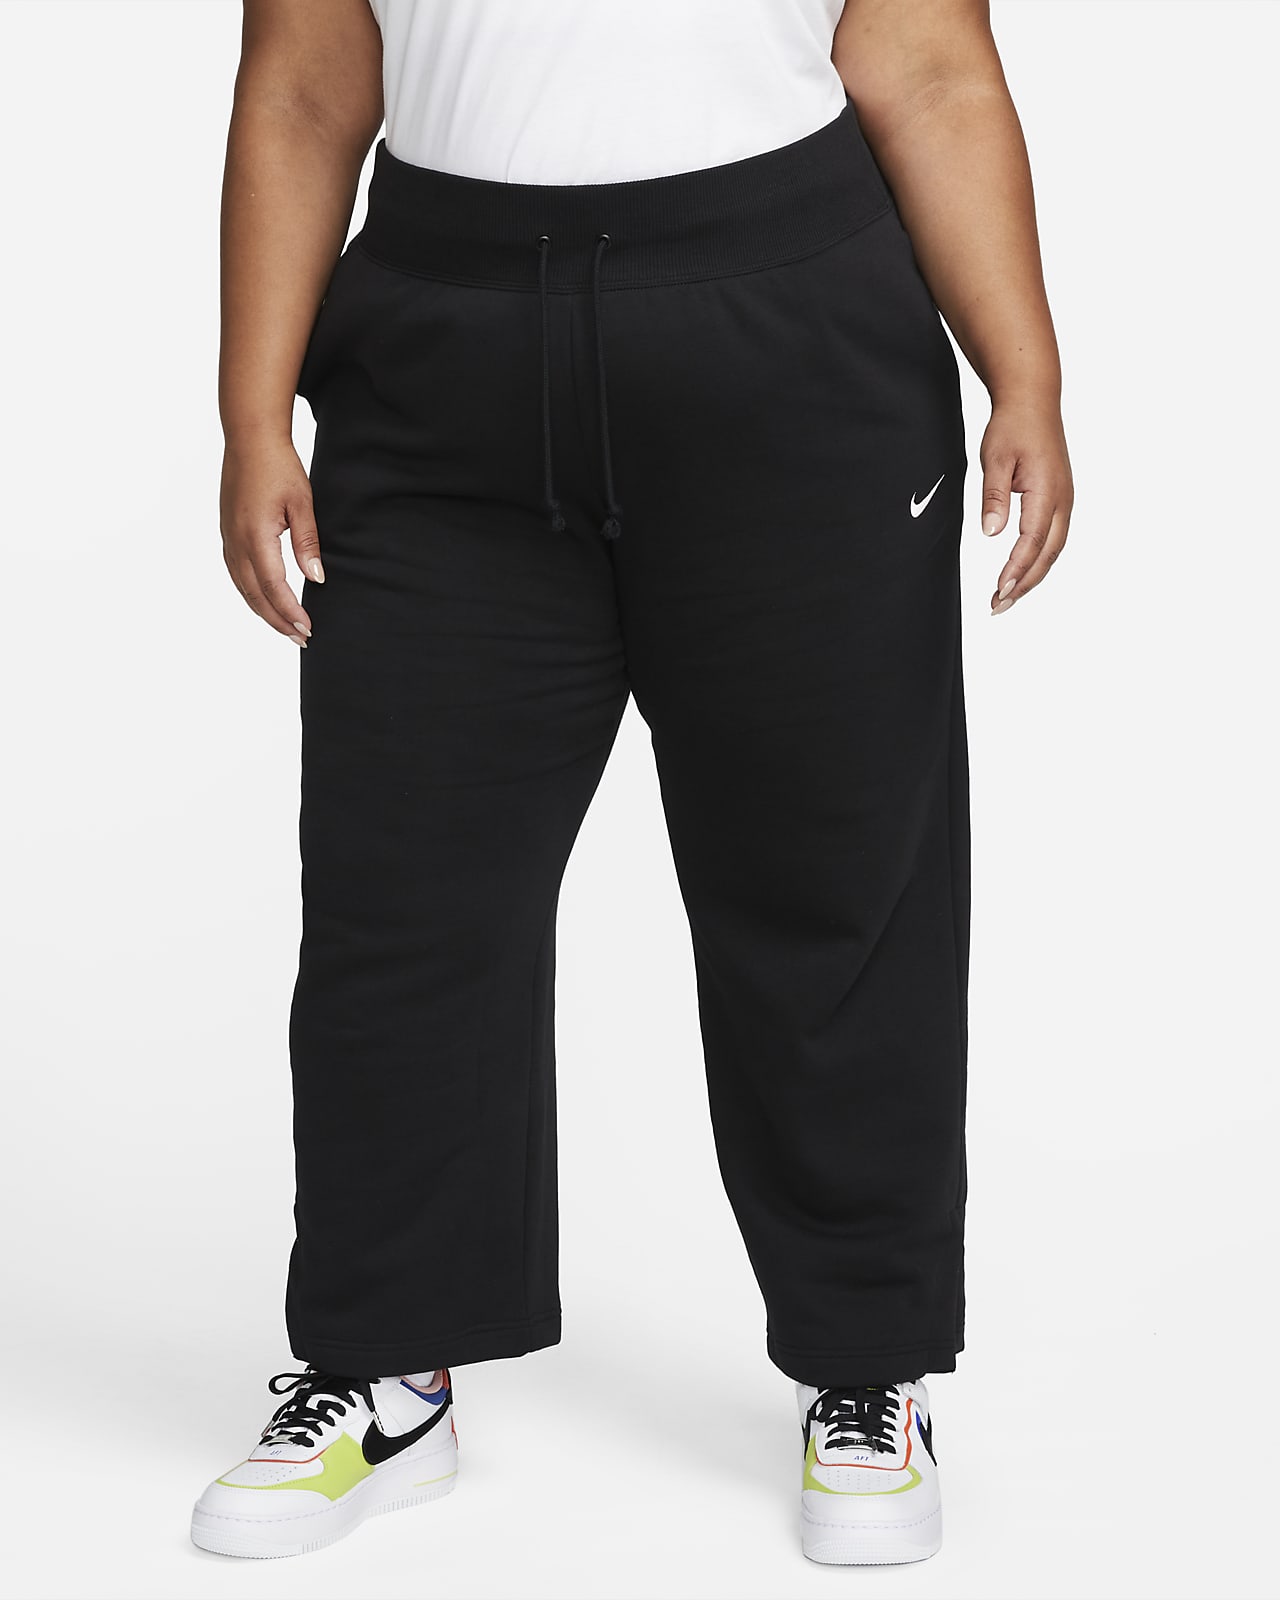 Dámské tepláky Nike Sportswear Phoenix Fleece s vysokým pasem a širokými nohavicemi (větší velikost)